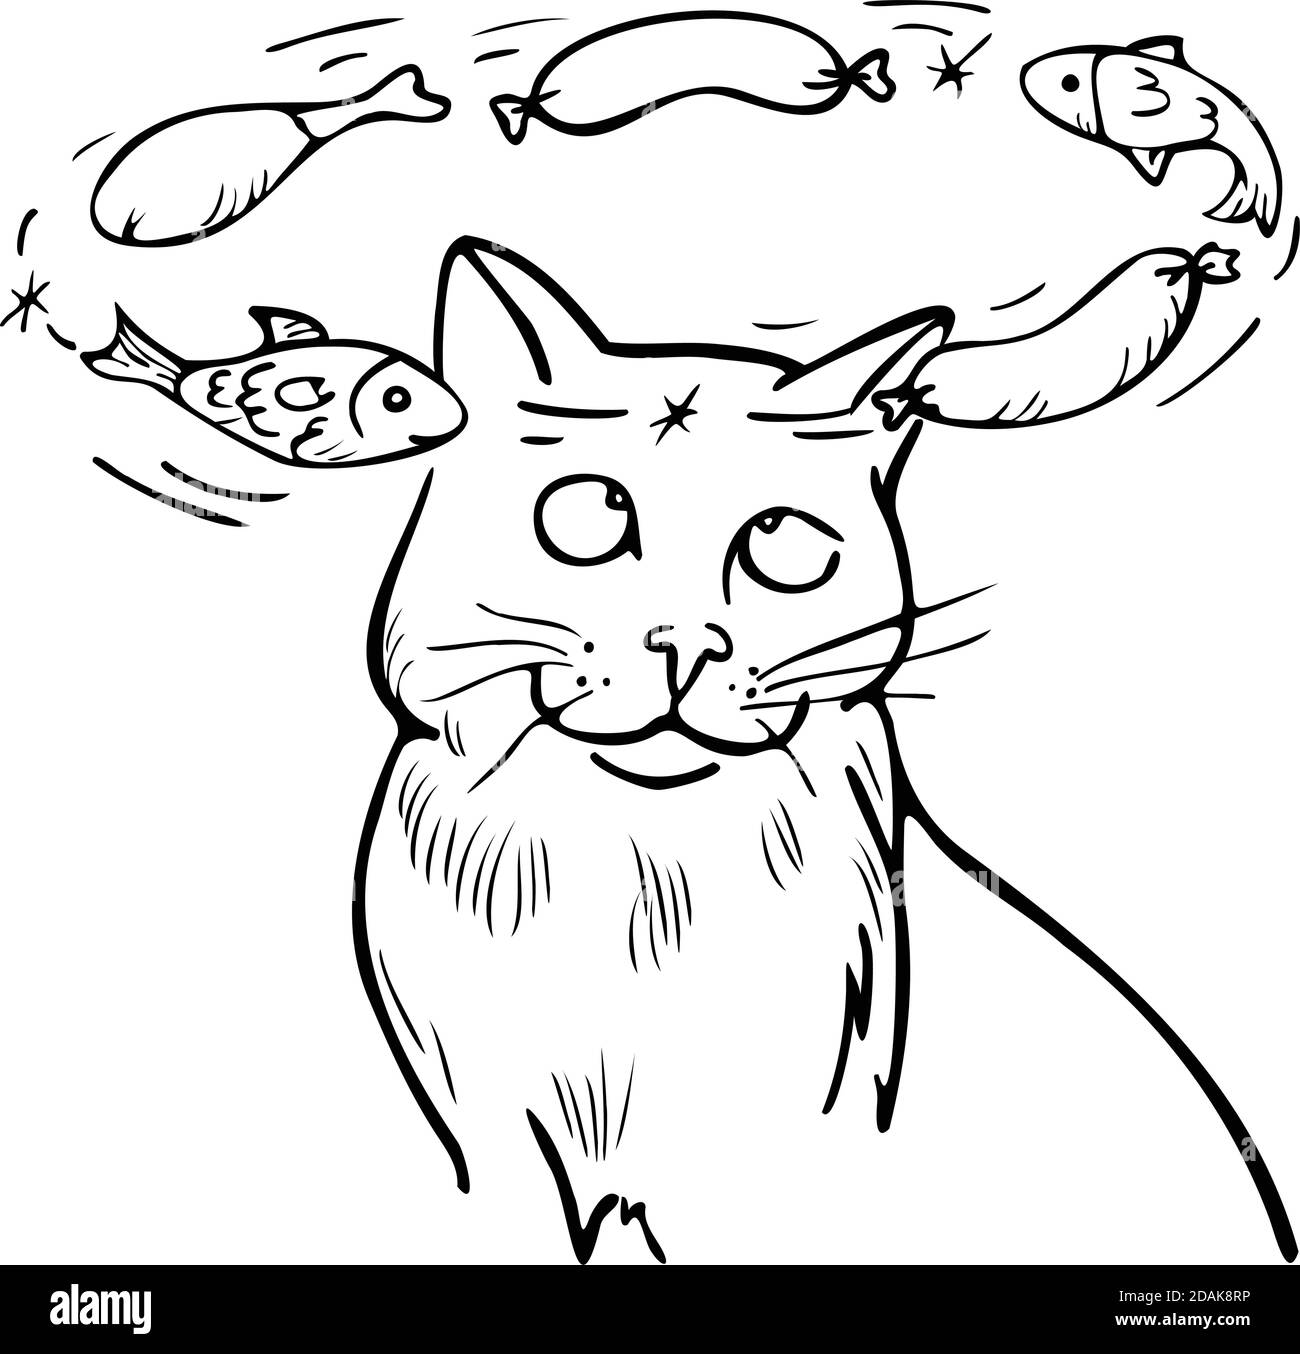 Vektor-Illustration schwindelerregende Katze träumt von Köstlichkeiten – Fisch, Wurst, Huhn. Lustige Cartoon-Stil Katze. Stock Vektor